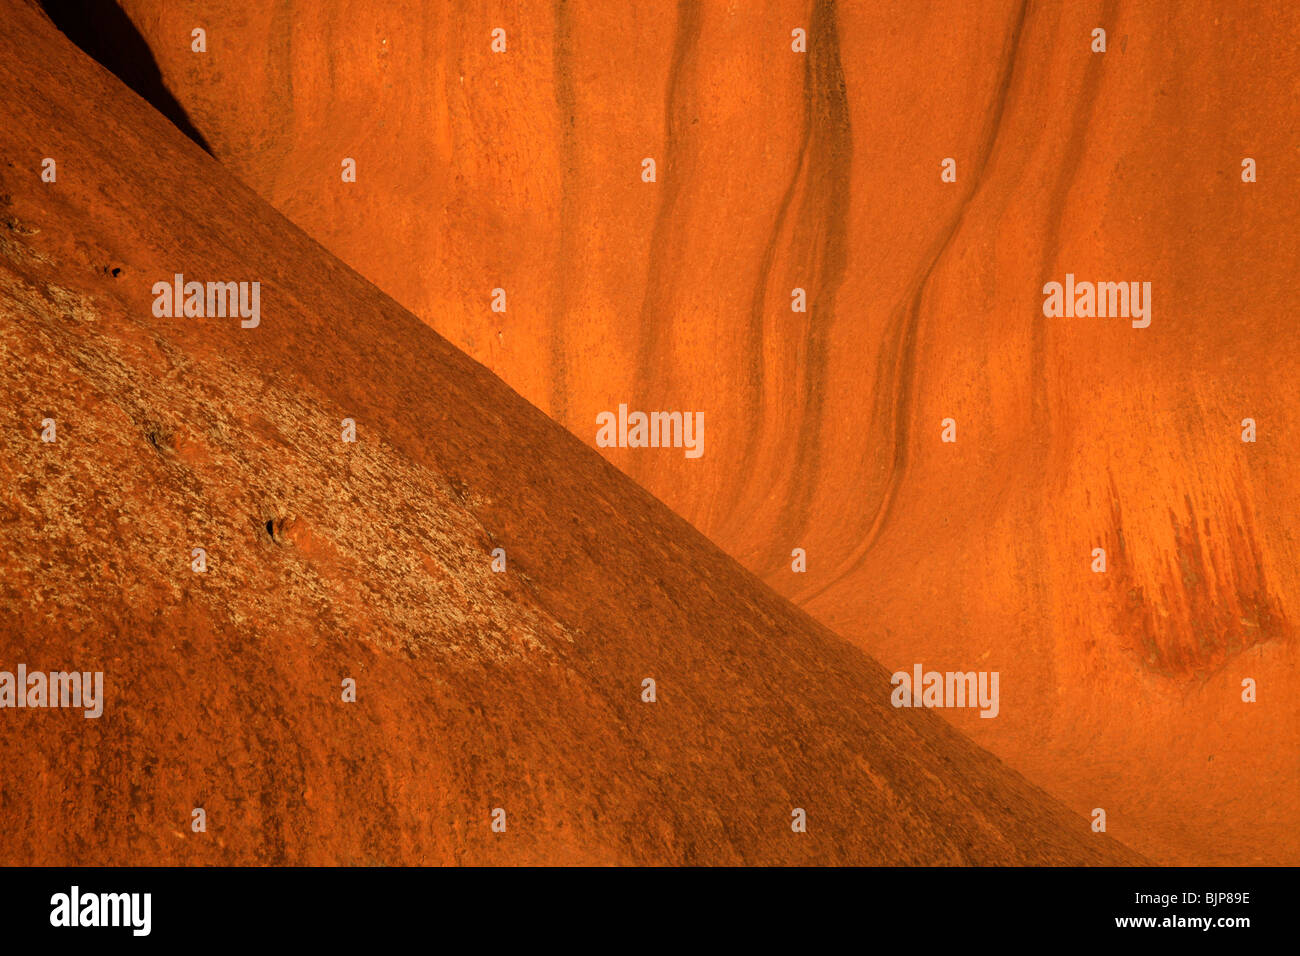 Formation de grès de renommée mondiale, l'Uluru ou Ayers Rock , Territoire du Nord, Australie Banque D'Images